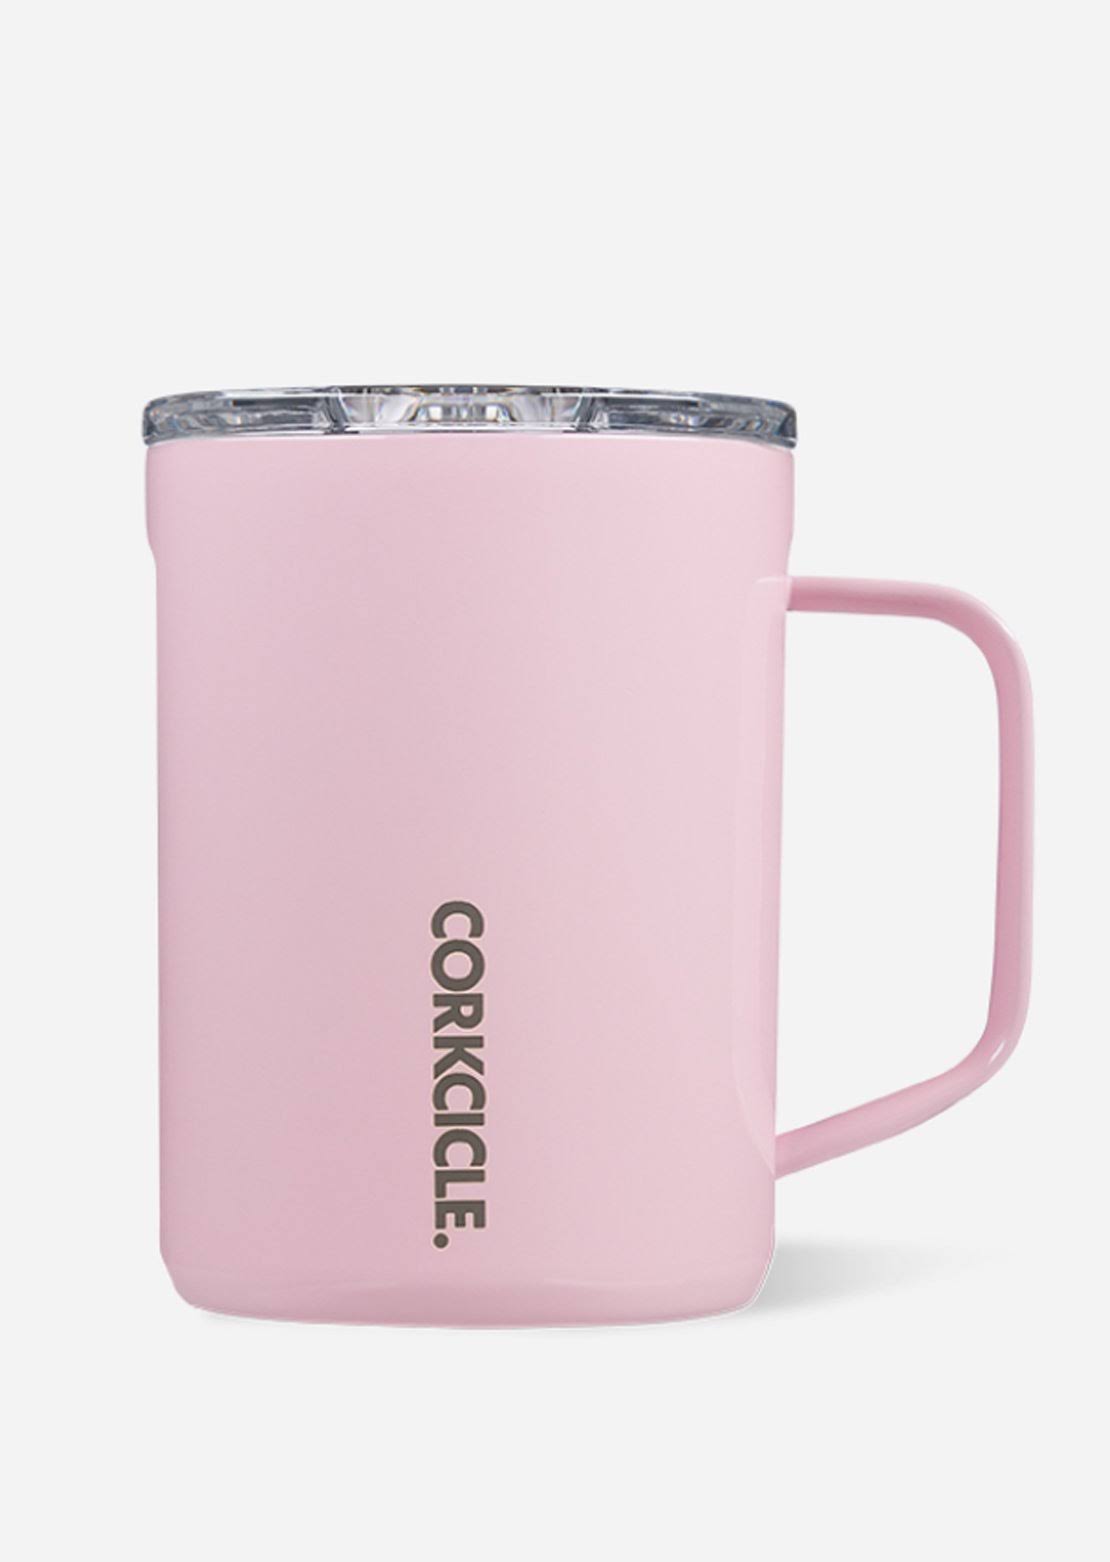 Corkcicle Coffee Mug Rose Quartz